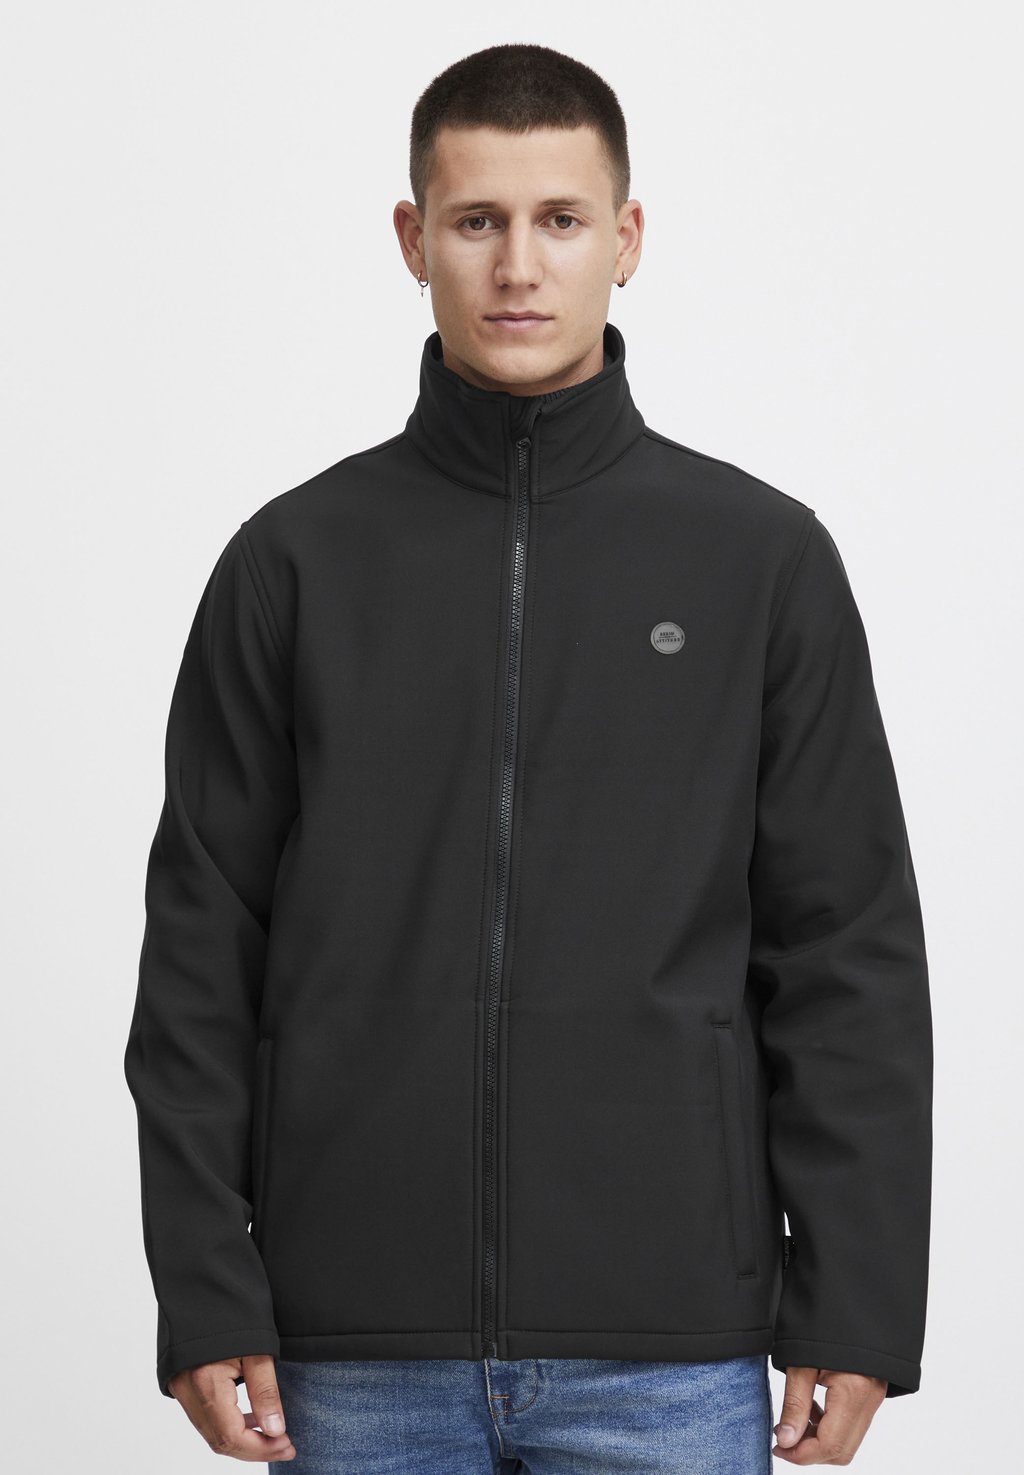 Легкая куртка OUTERWEAR Blend, цвет black легкая куртка sorensen blend цвет black